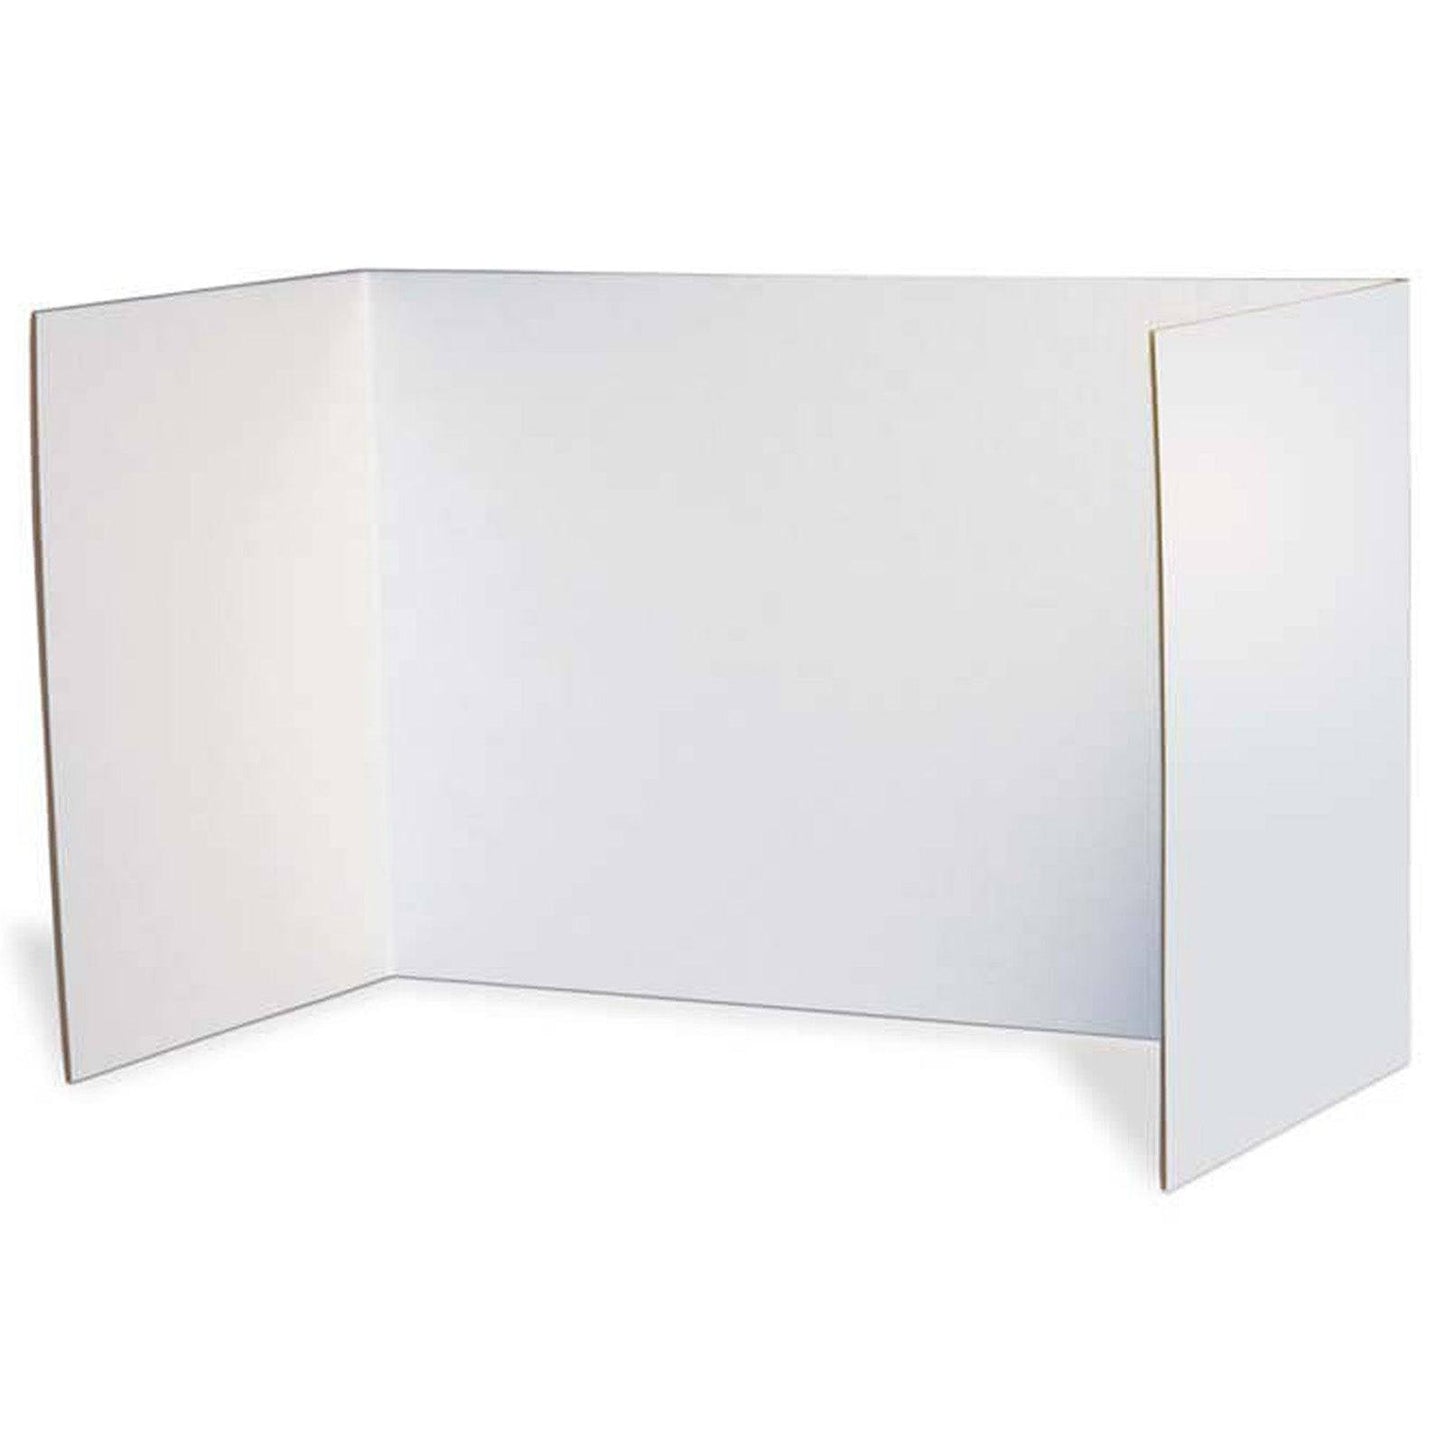 Privacy Boards, White, 48" x 16", 4 Boards - Loomini